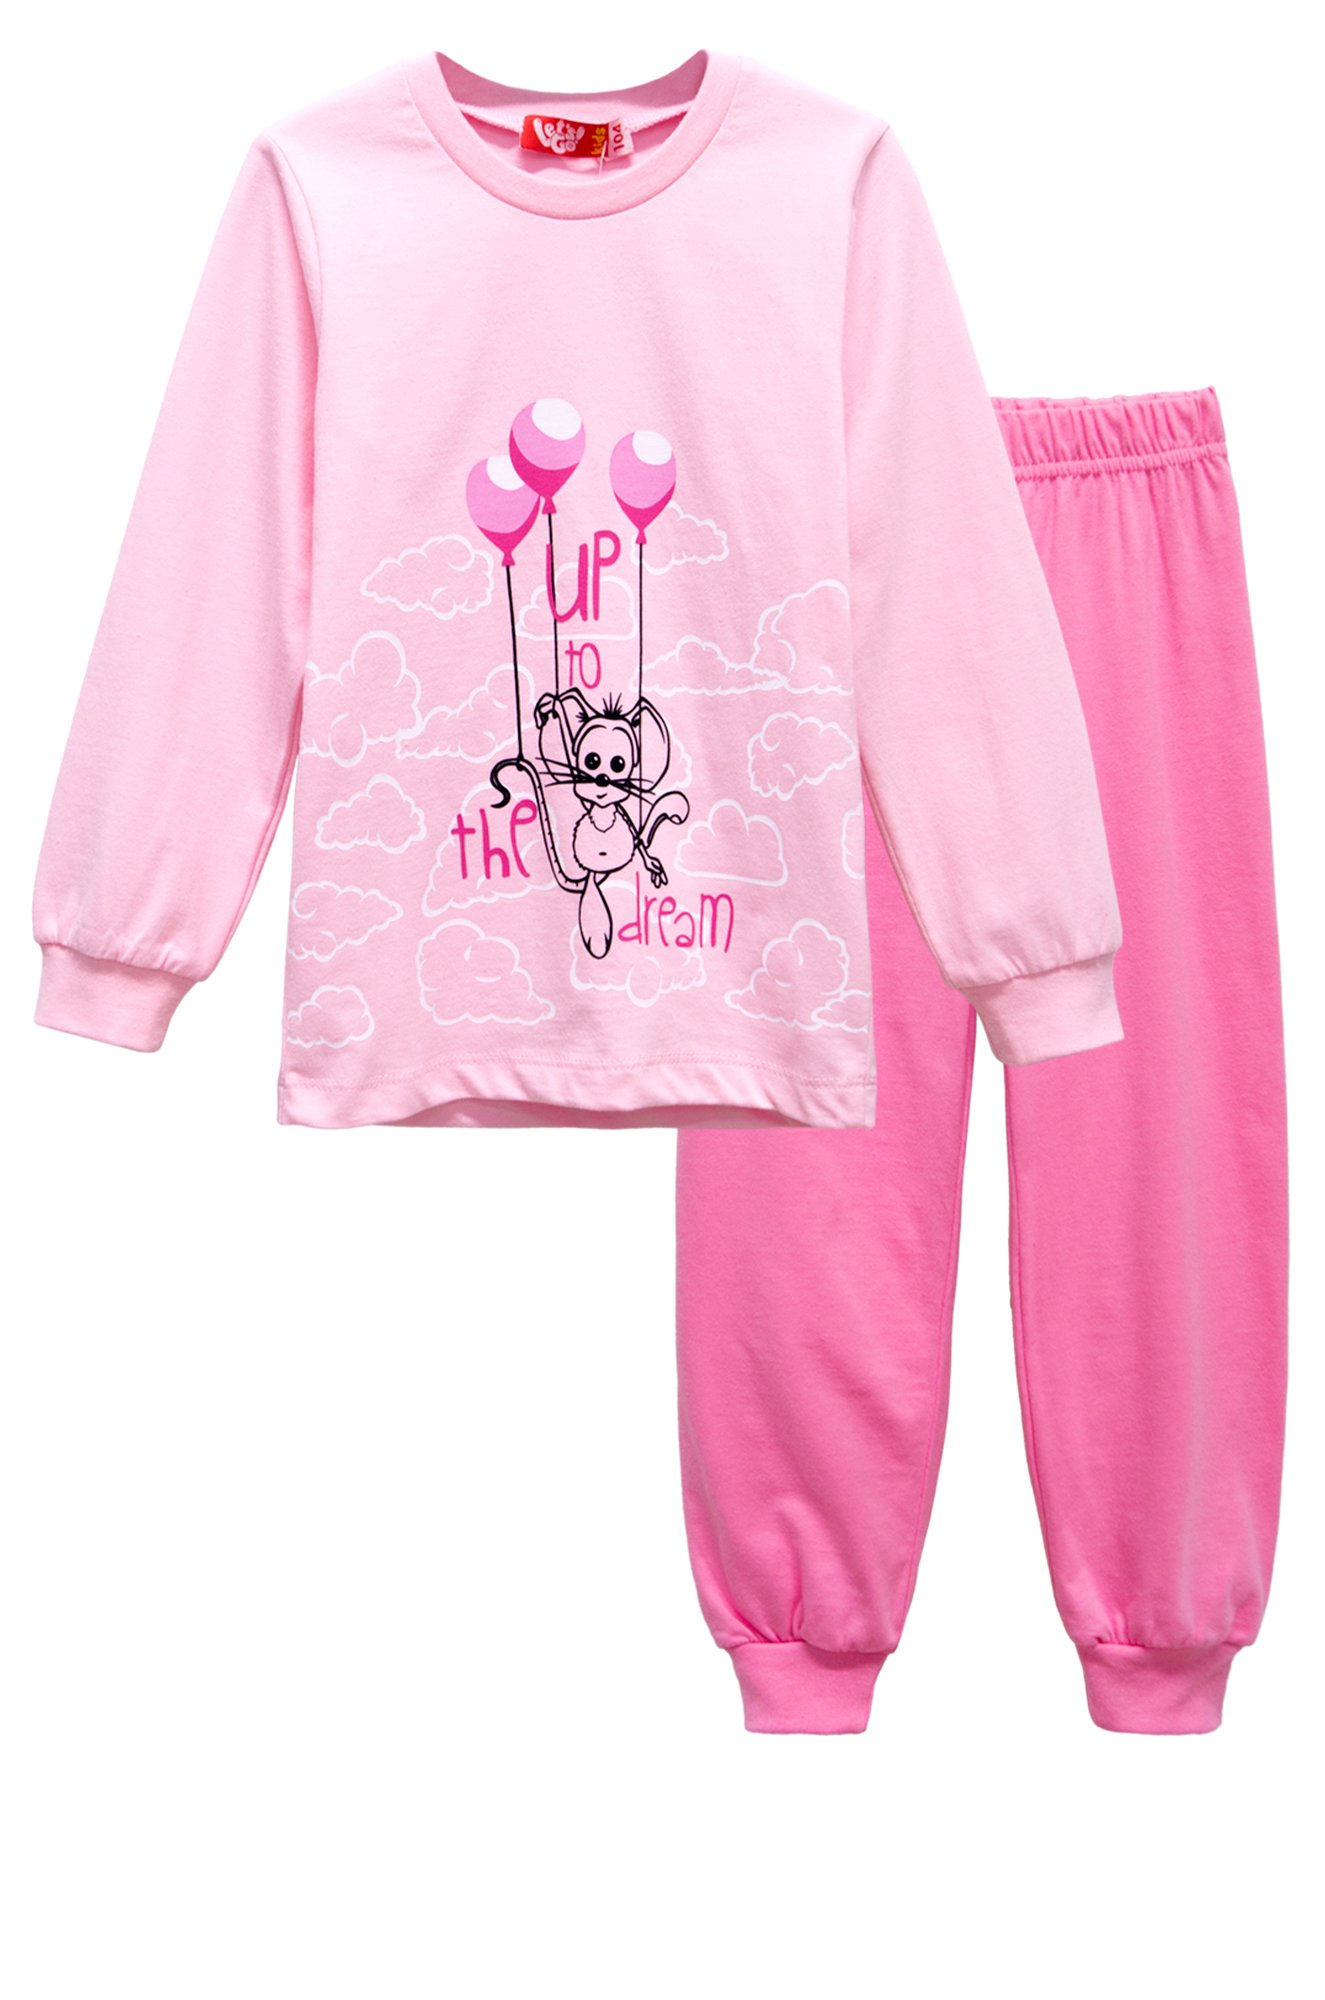 Валберис пижама для девочек. Пижама для девочки 9148 Lets go. Пижама для девочки розовая. Пижама для девочки 3 года. Пижама для девочки 5 лет.